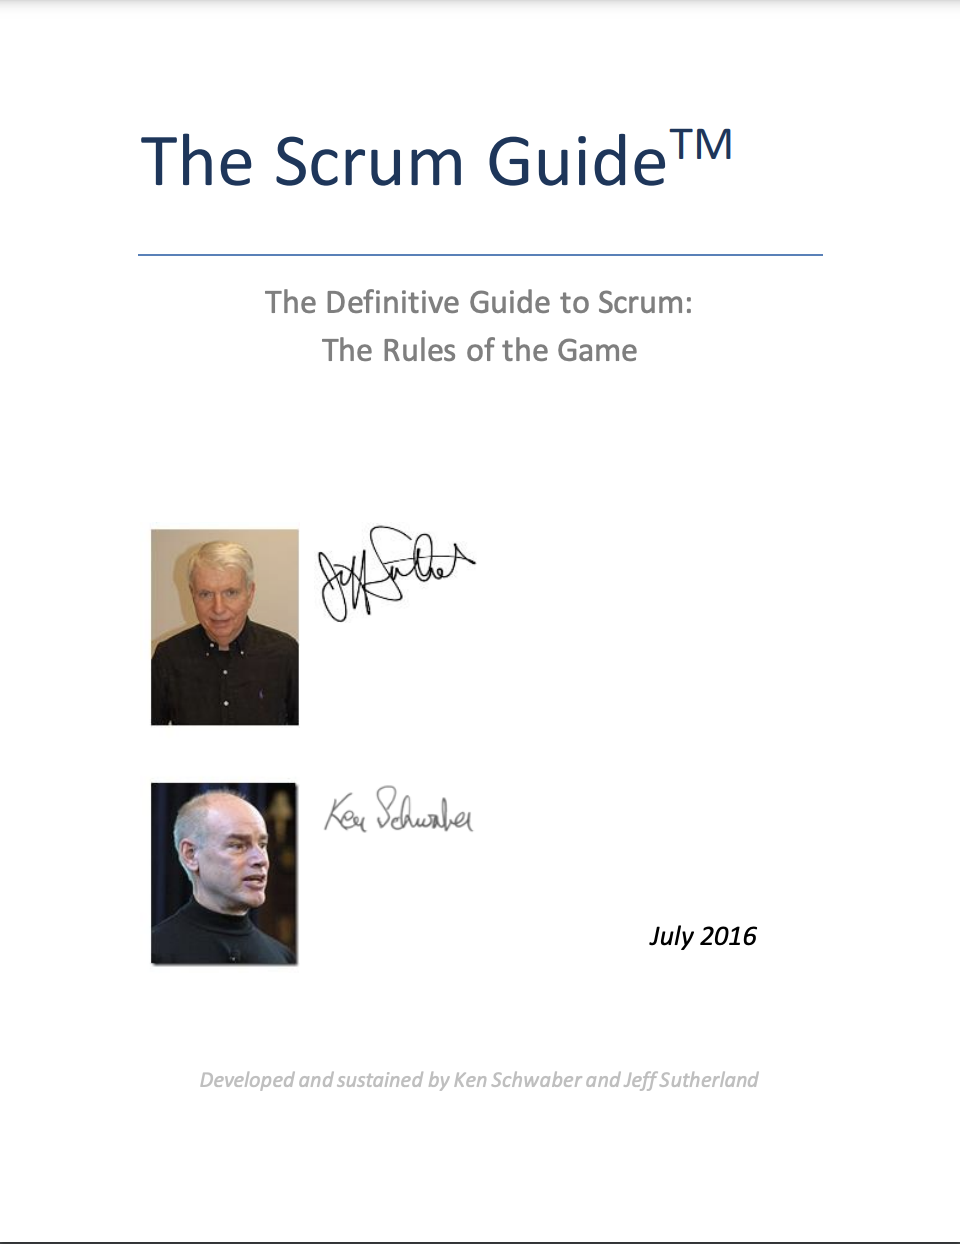 Scrum Guide Jul 2016